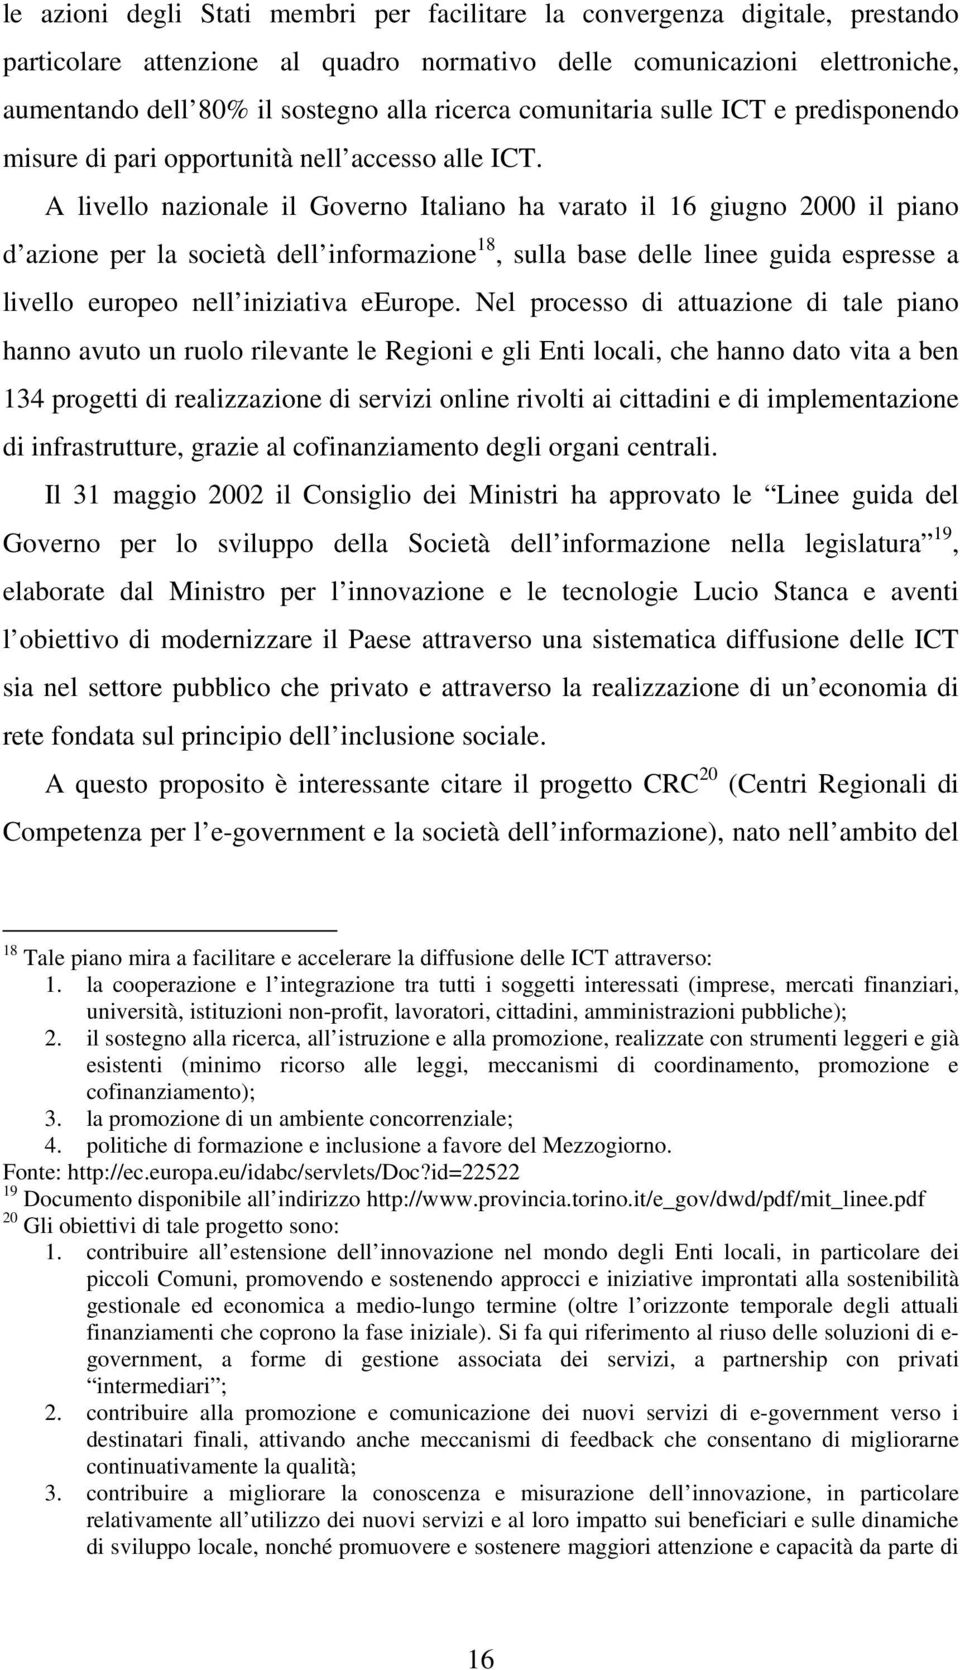 A livello nazionale il Governo Italiano ha varato il 16 giugno 2000 il piano d azione per la società dell informazione 18, sulla base delle linee guida espresse a livello europeo nell iniziativa